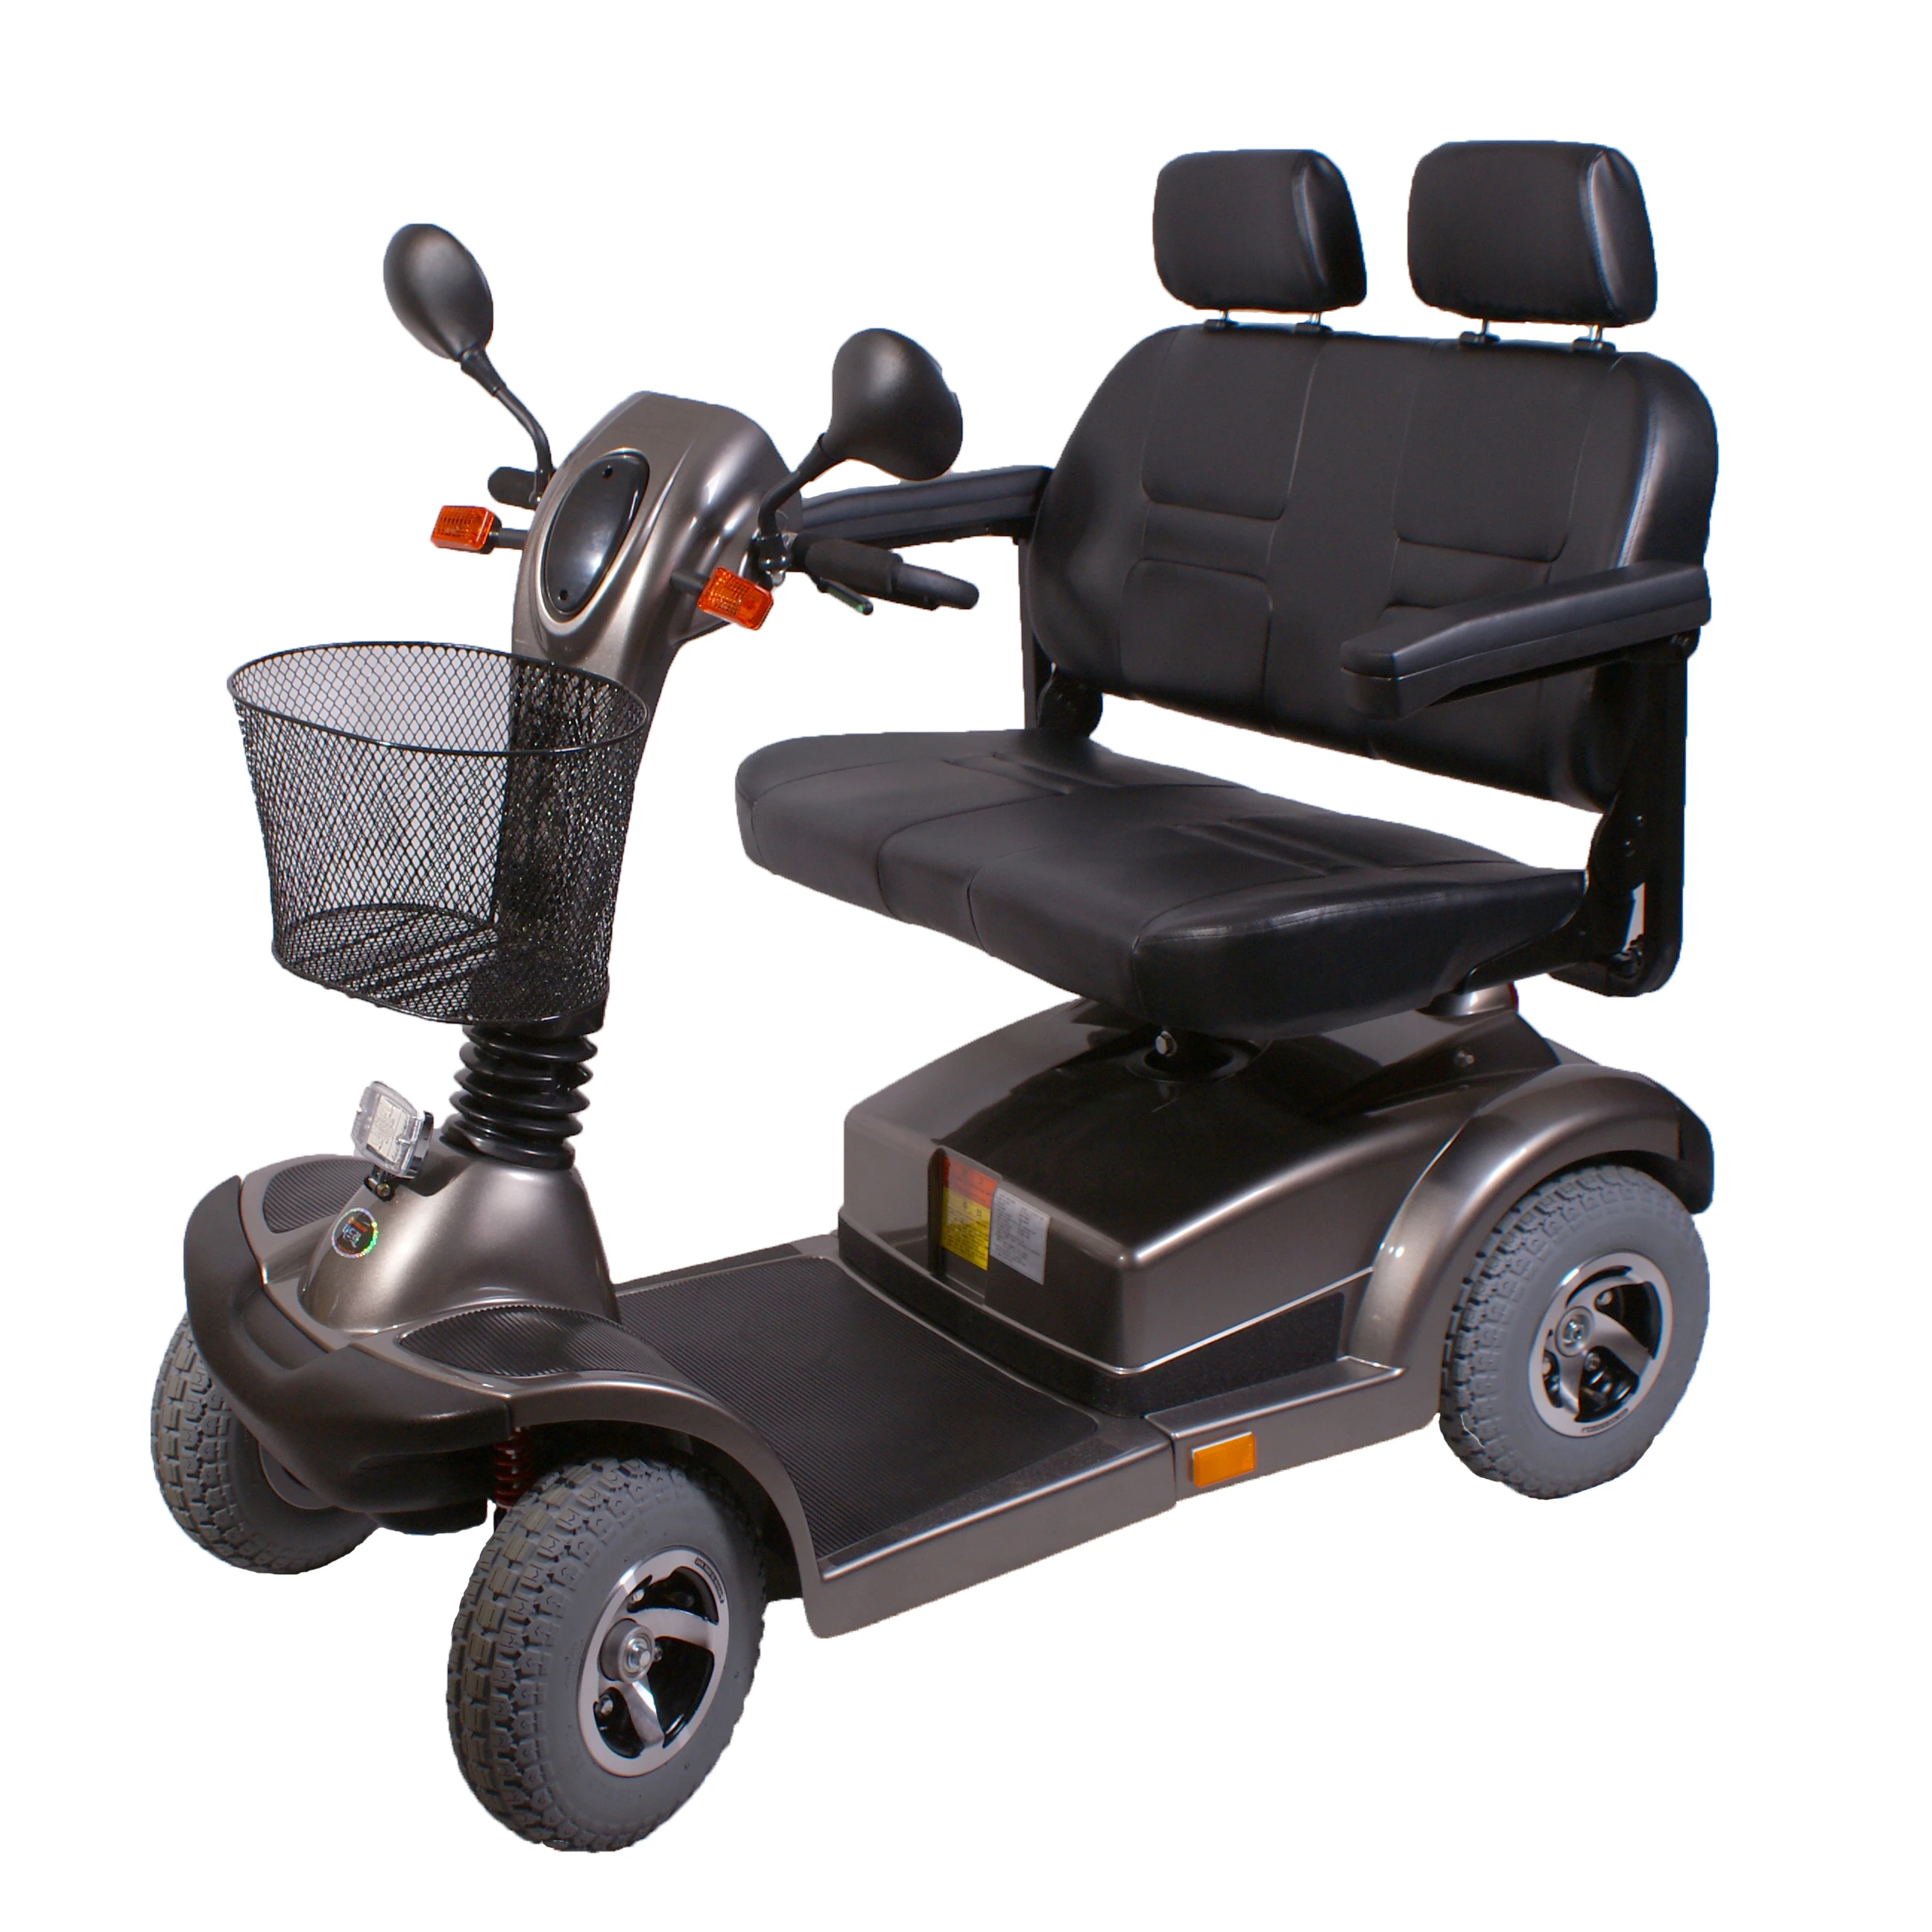 Скутер для инвалидов и пожилых. Электроскутер для инвалидов модель fr510gdx leon4. Электроскутер для инвалидов z-Tec 4-Wheel DW-01. Скутер для инвалидов Тандем. Электроскутер 4-колесн. Для инвалидов.